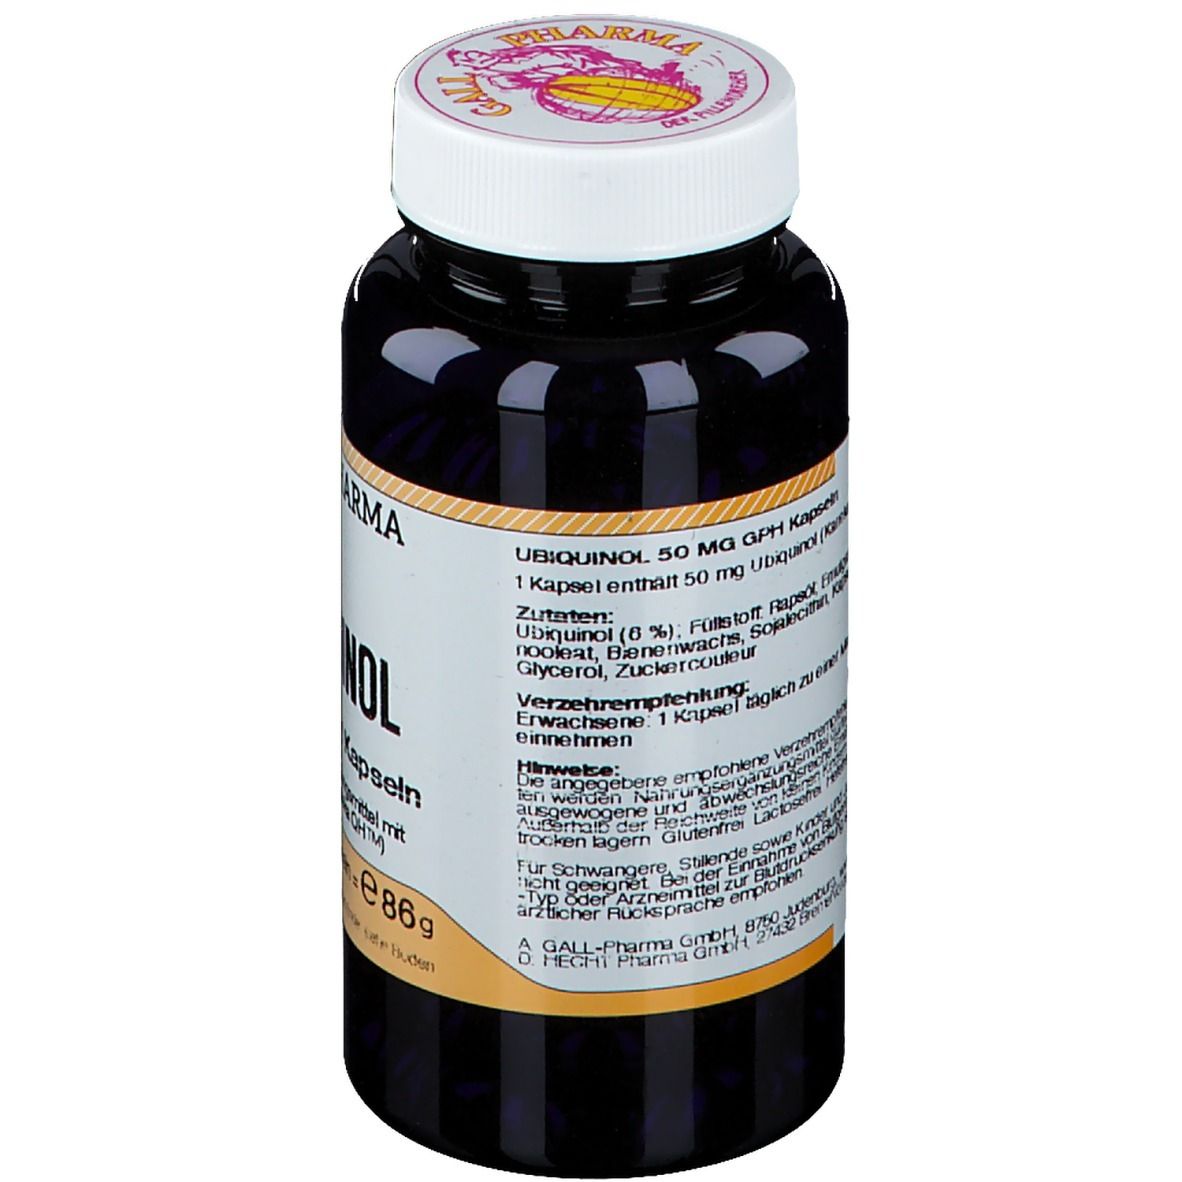 GALL PHARMA Ubiquinol 50 mg GPH